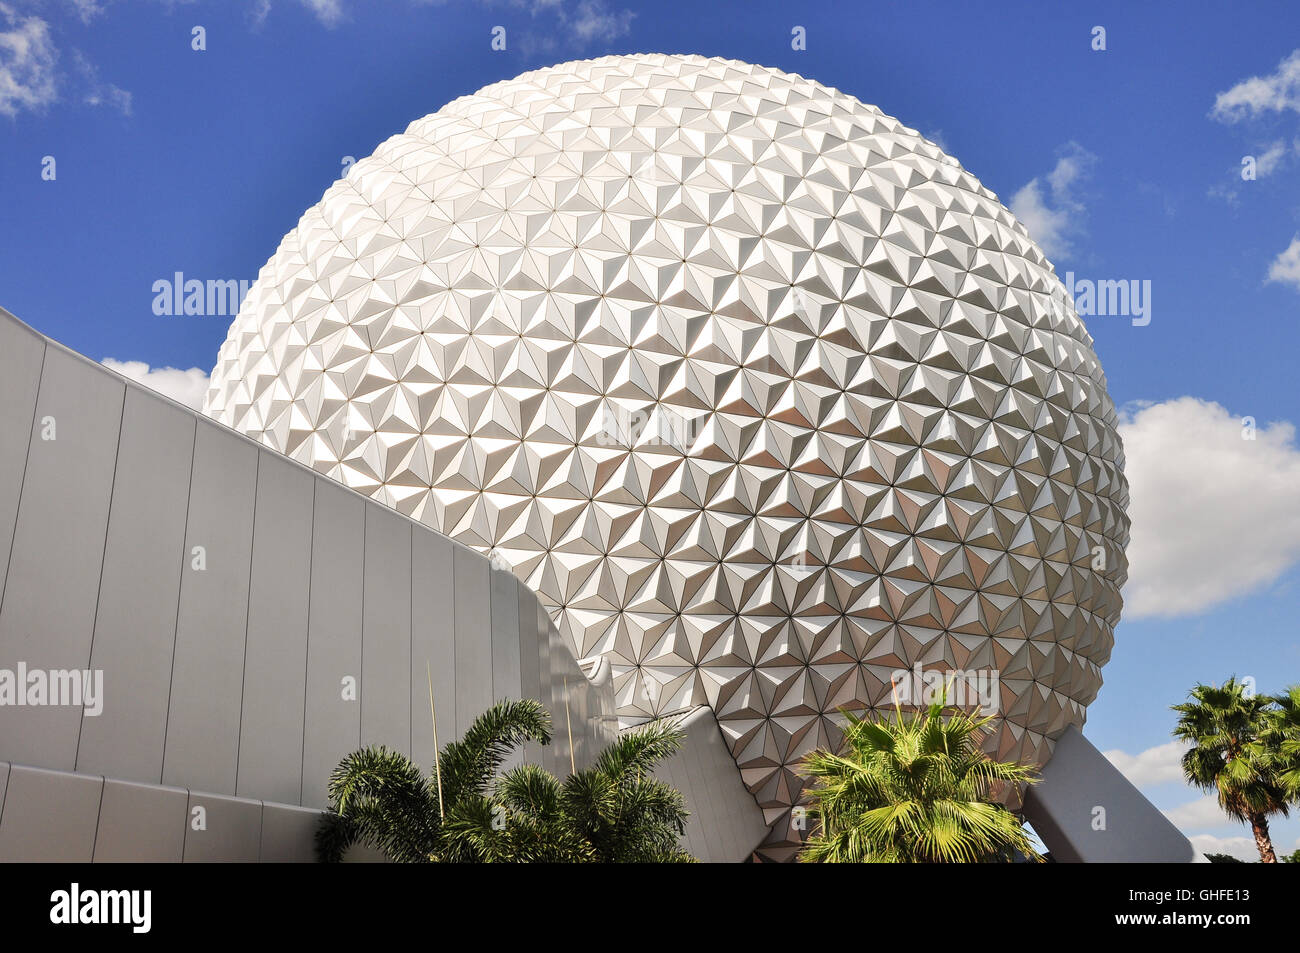 Raumschiff Erde ist die symbolische Struktur des Epcot, ein Themenpark innerhalb der Disney World Resort in Orlando, Florida. Stockfoto